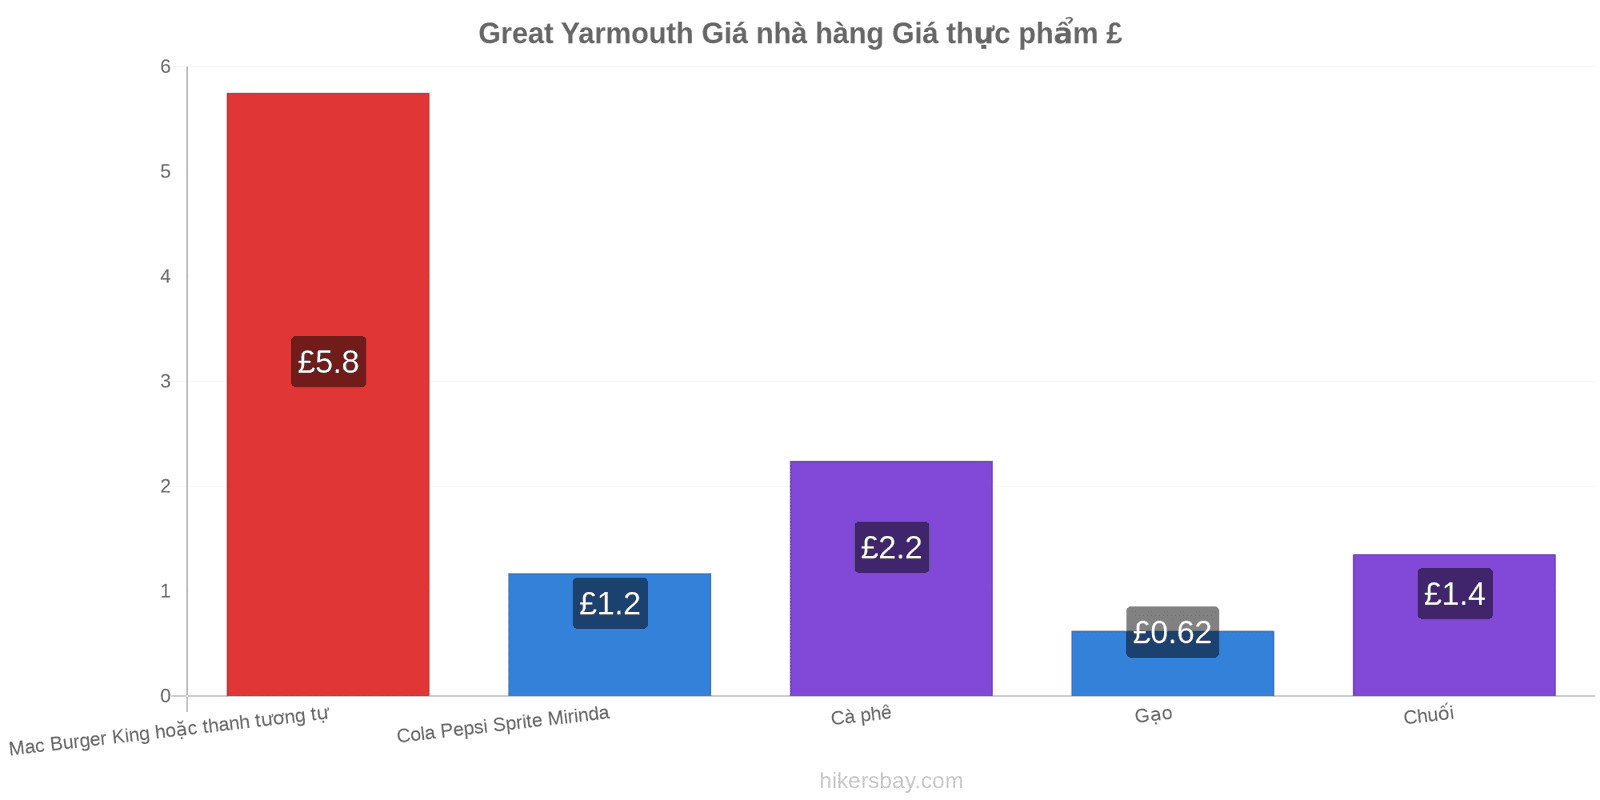 Great Yarmouth thay đổi giá cả hikersbay.com